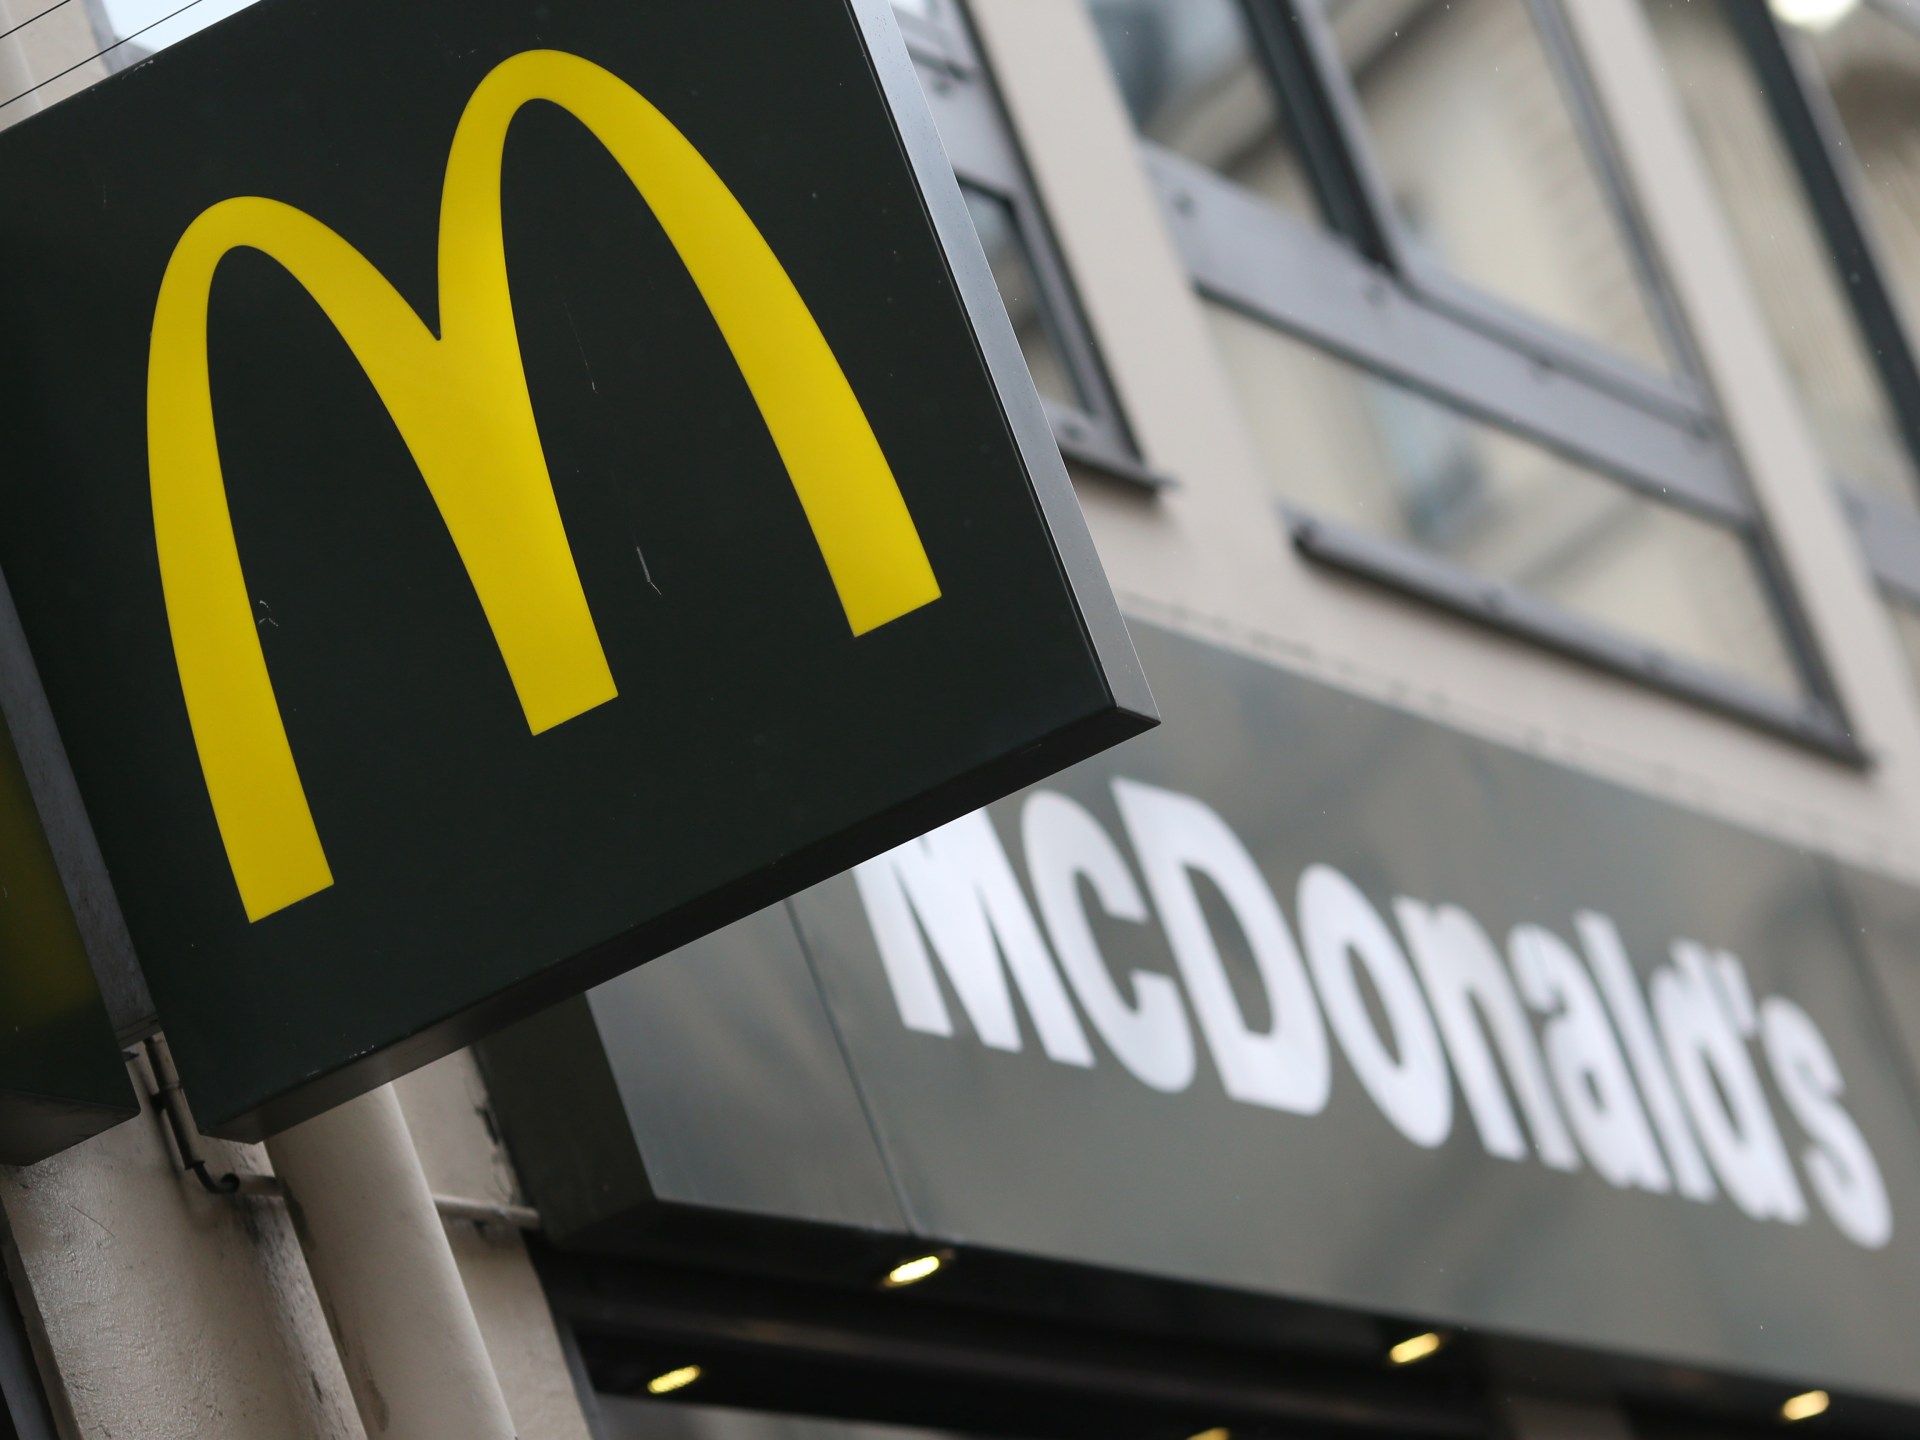 ماكدونالدز تقر بتأثر أعمالها بأسواق الشرق الأوسط إثر حرب غزة | اقتصاد – البوكس نيوز